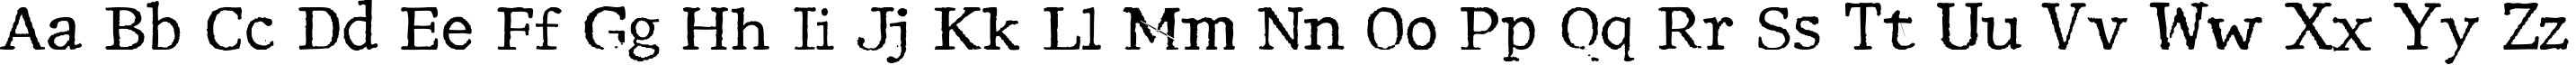 Пример написания английского алфавита шрифтом Motley